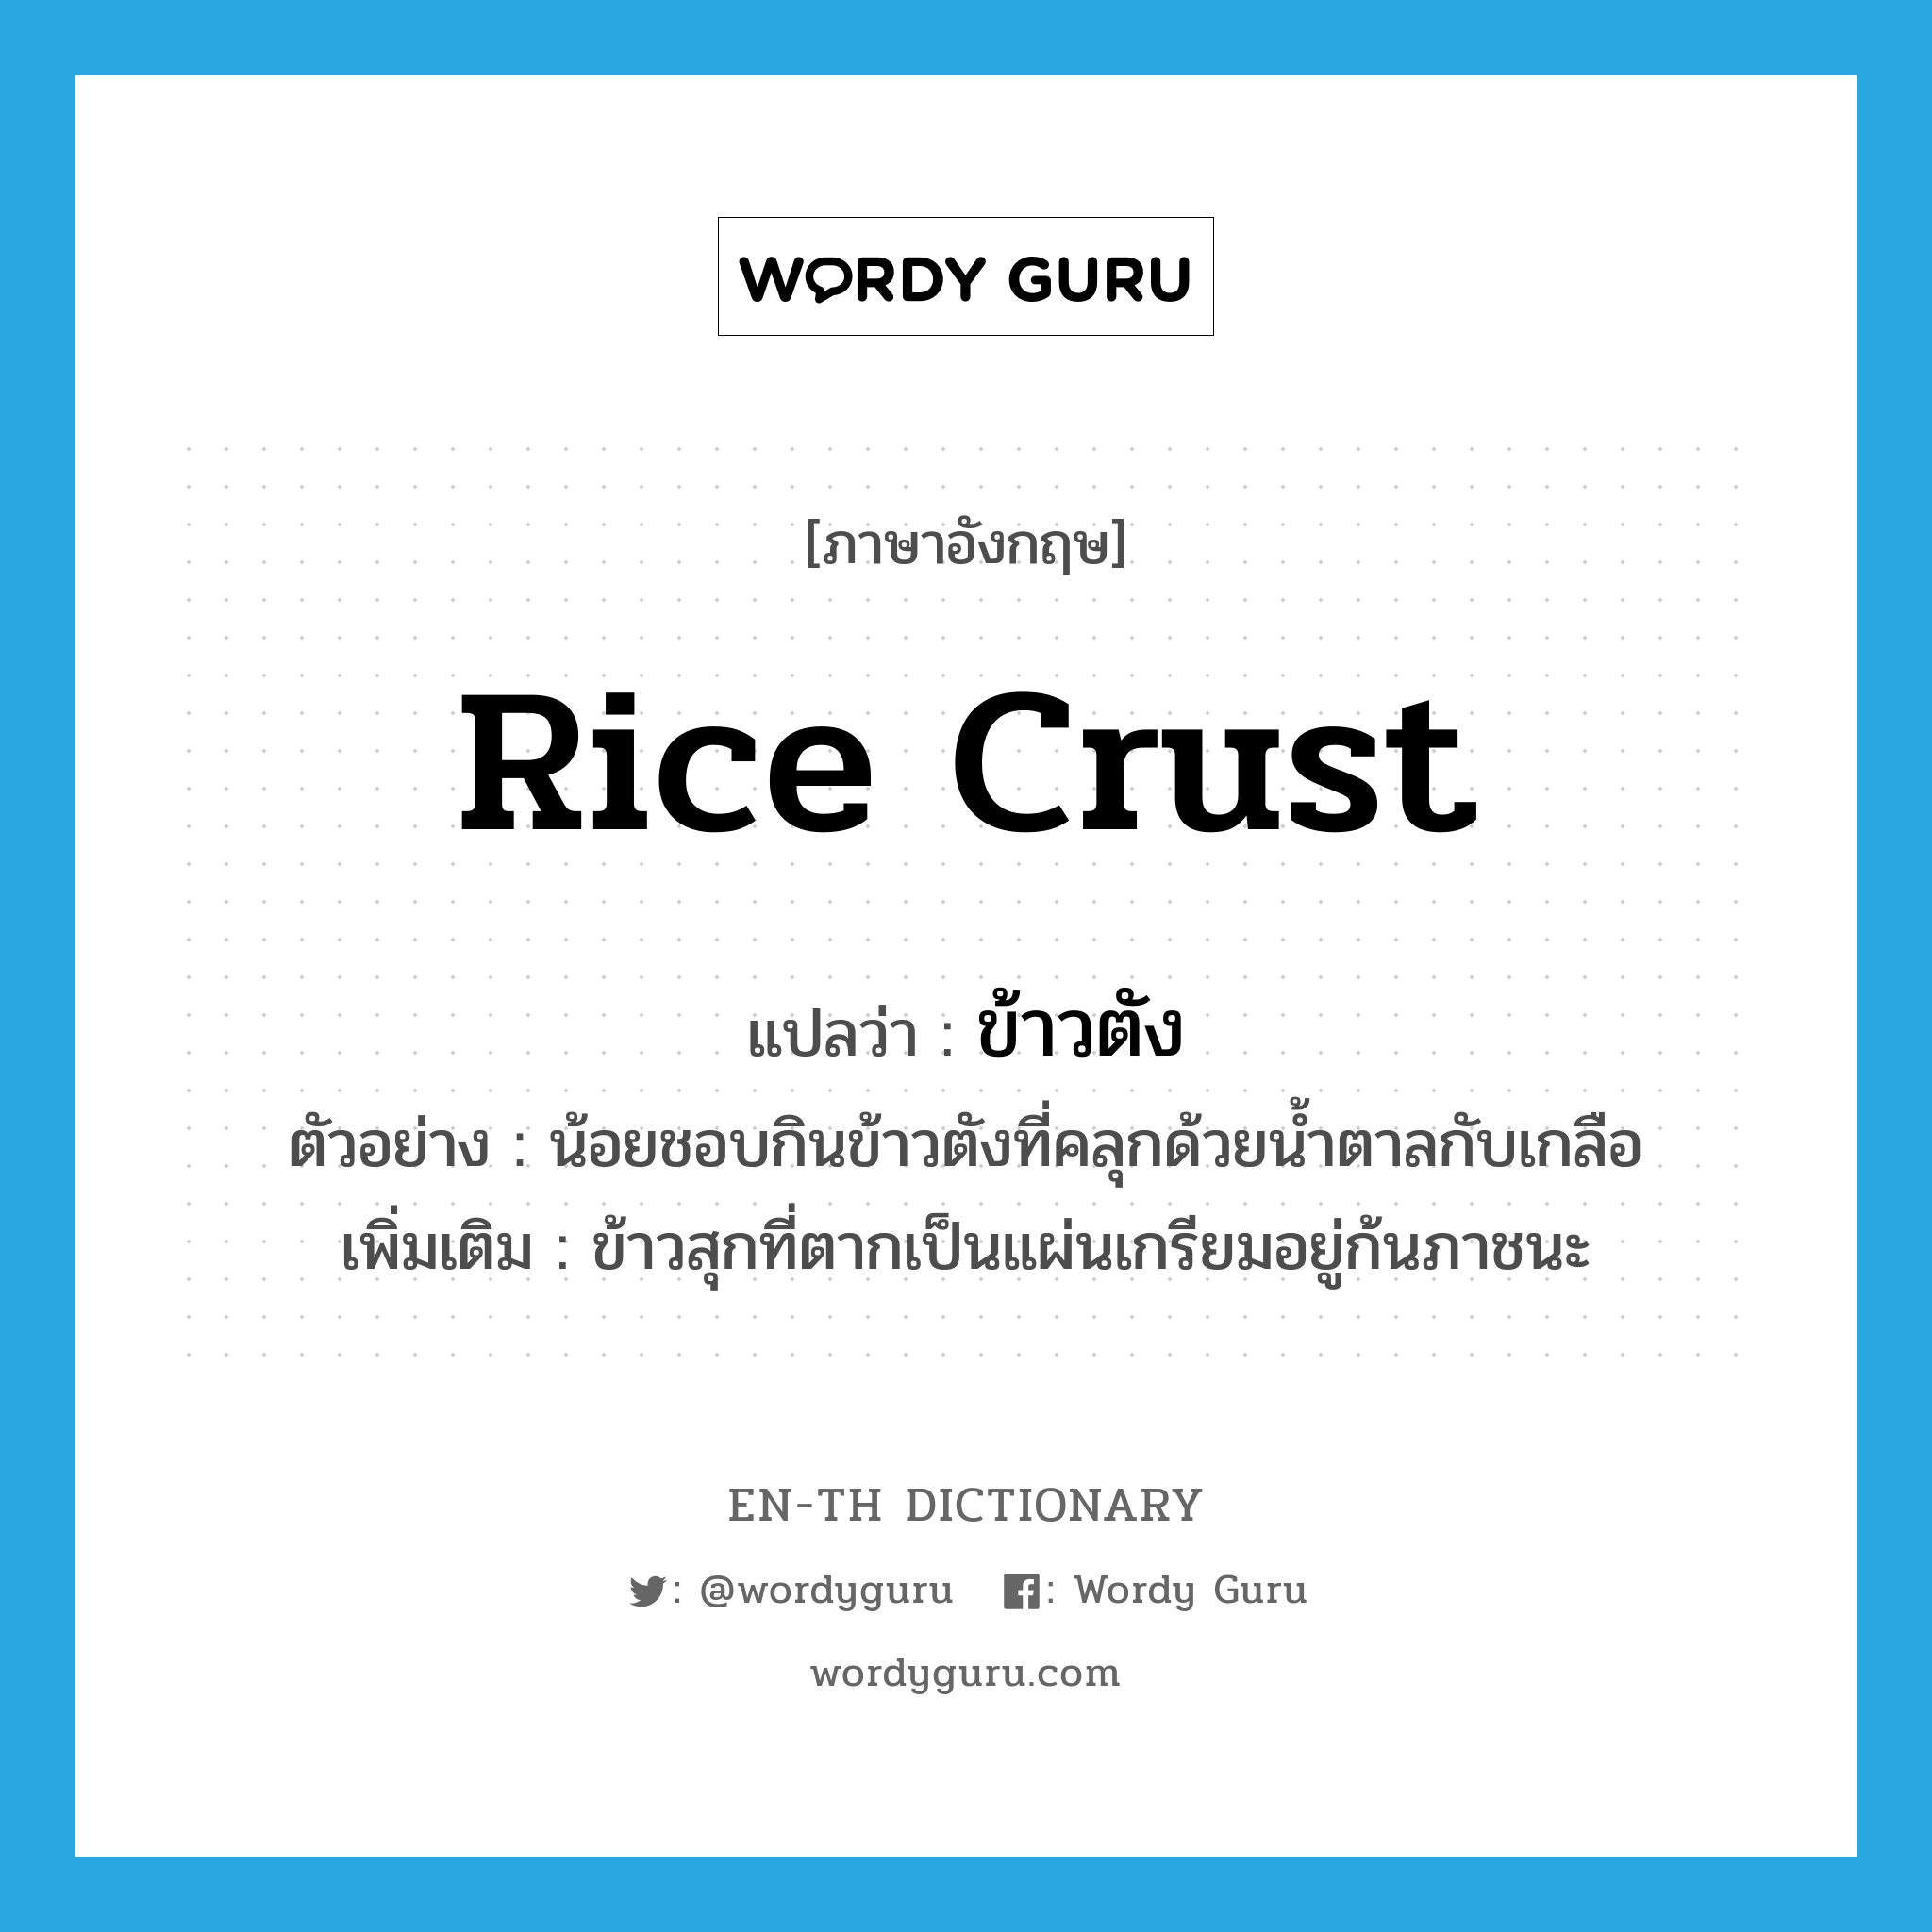 rice crust แปลว่า?, คำศัพท์ภาษาอังกฤษ rice crust แปลว่า ข้าวตัง ประเภท N ตัวอย่าง น้อยชอบกินข้าวตังที่คลุกด้วยน้ำตาลกับเกลือ เพิ่มเติม ข้าวสุกที่ตากเป็นแผ่นเกรียมอยู่ก้นภาชนะ หมวด N